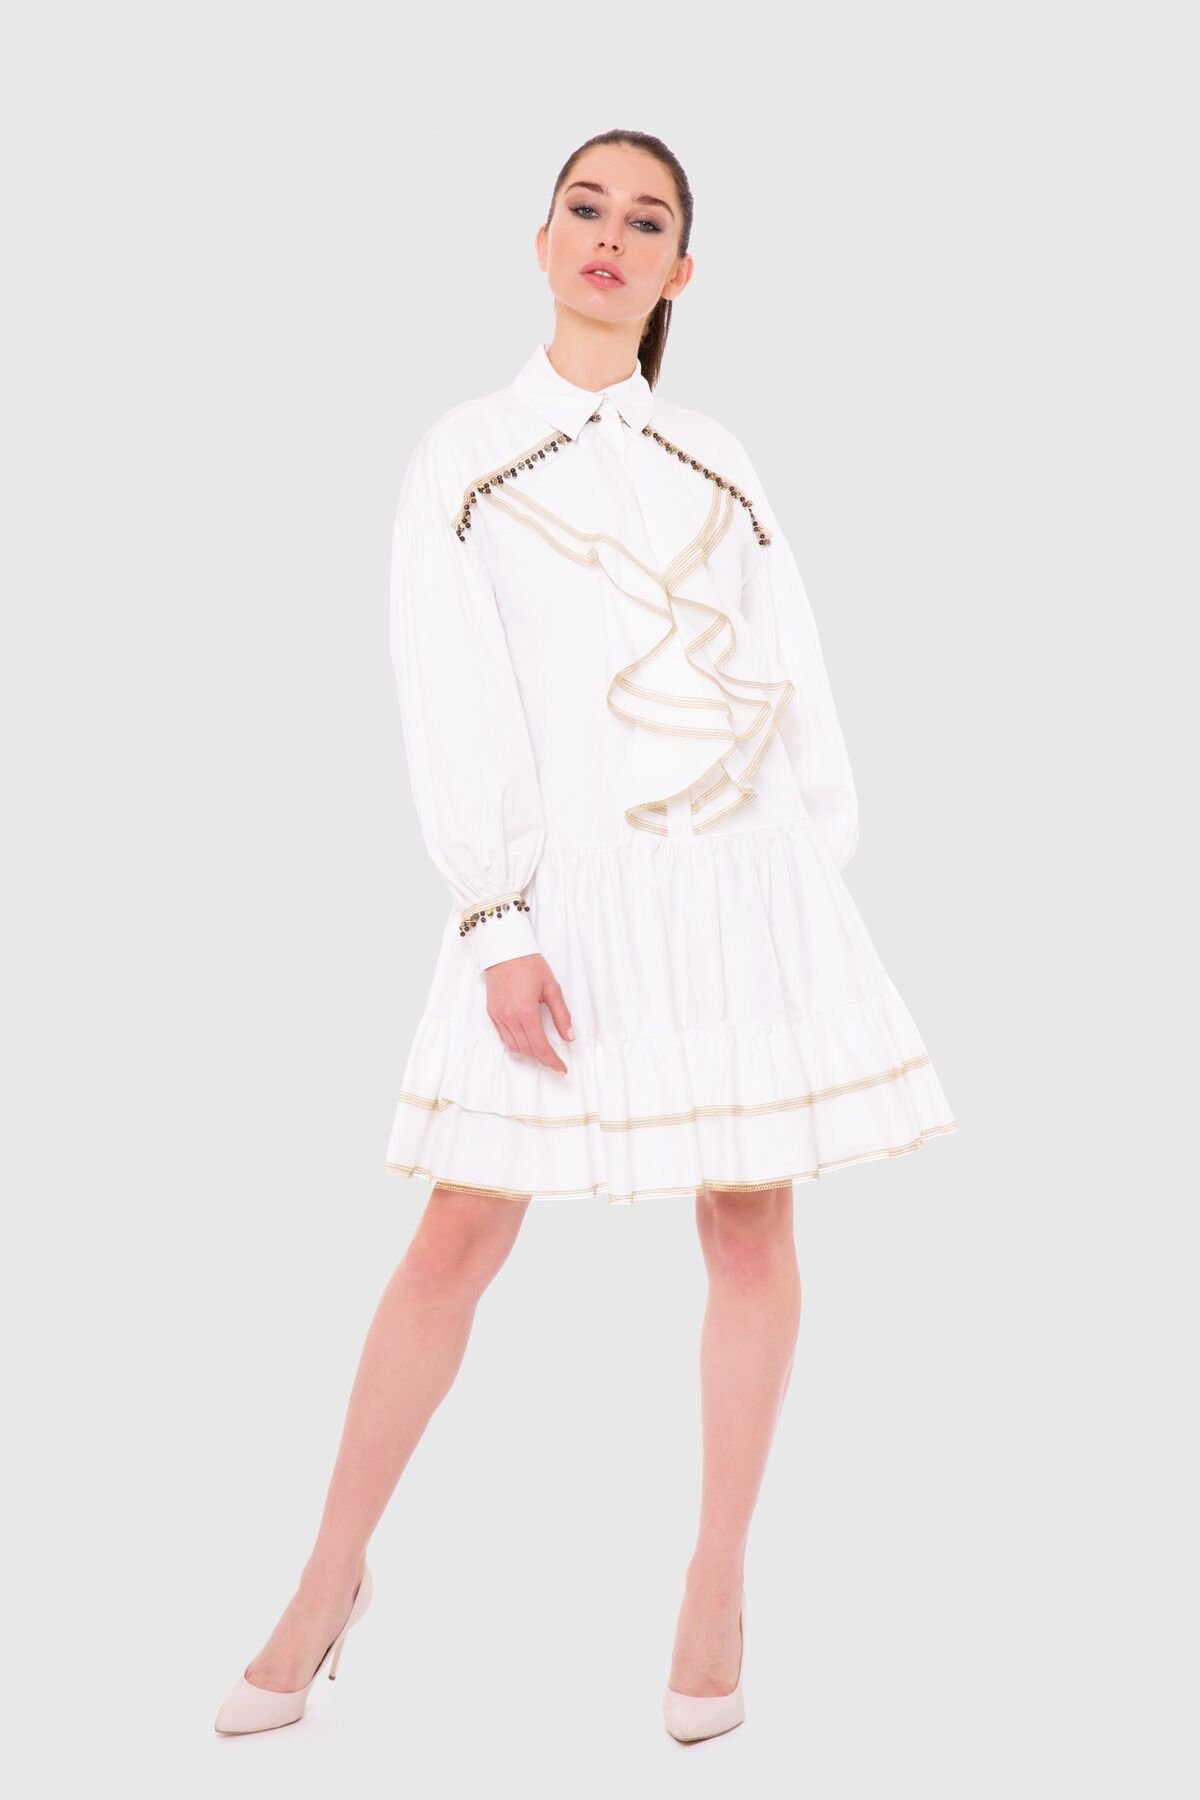 Godeli, Voluminous Sleeves Mini White Dress